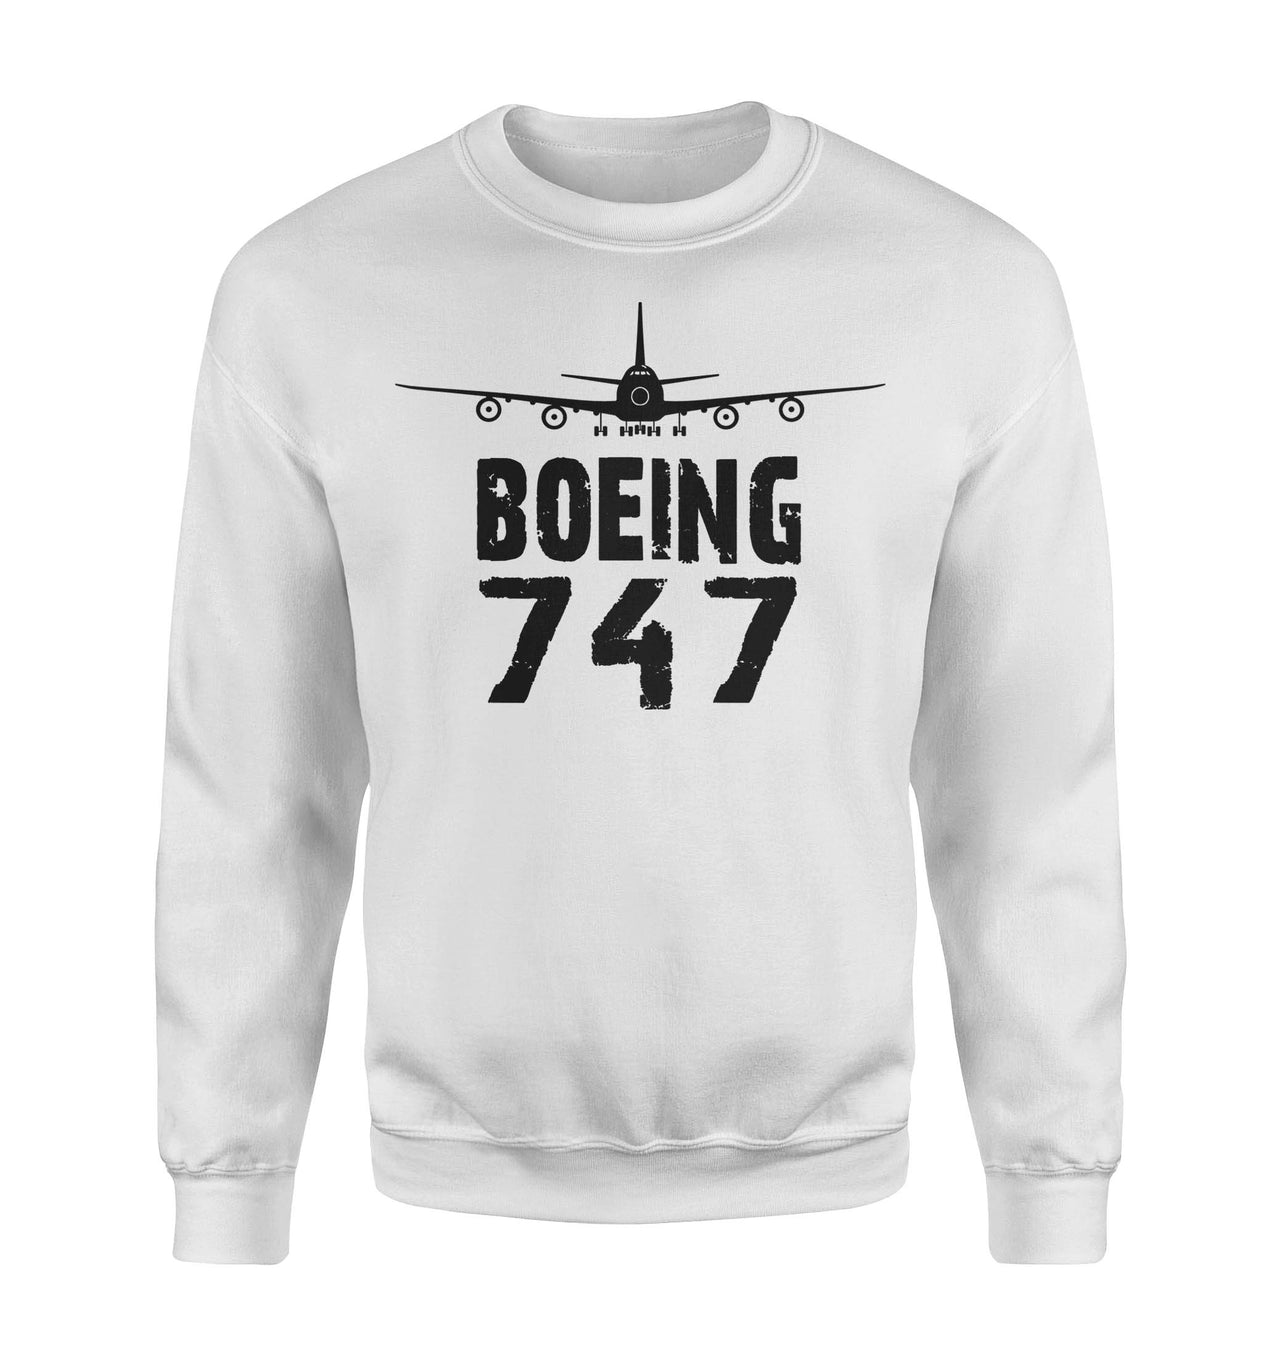 Boeing 747 & Plane Designed Sweatshirts